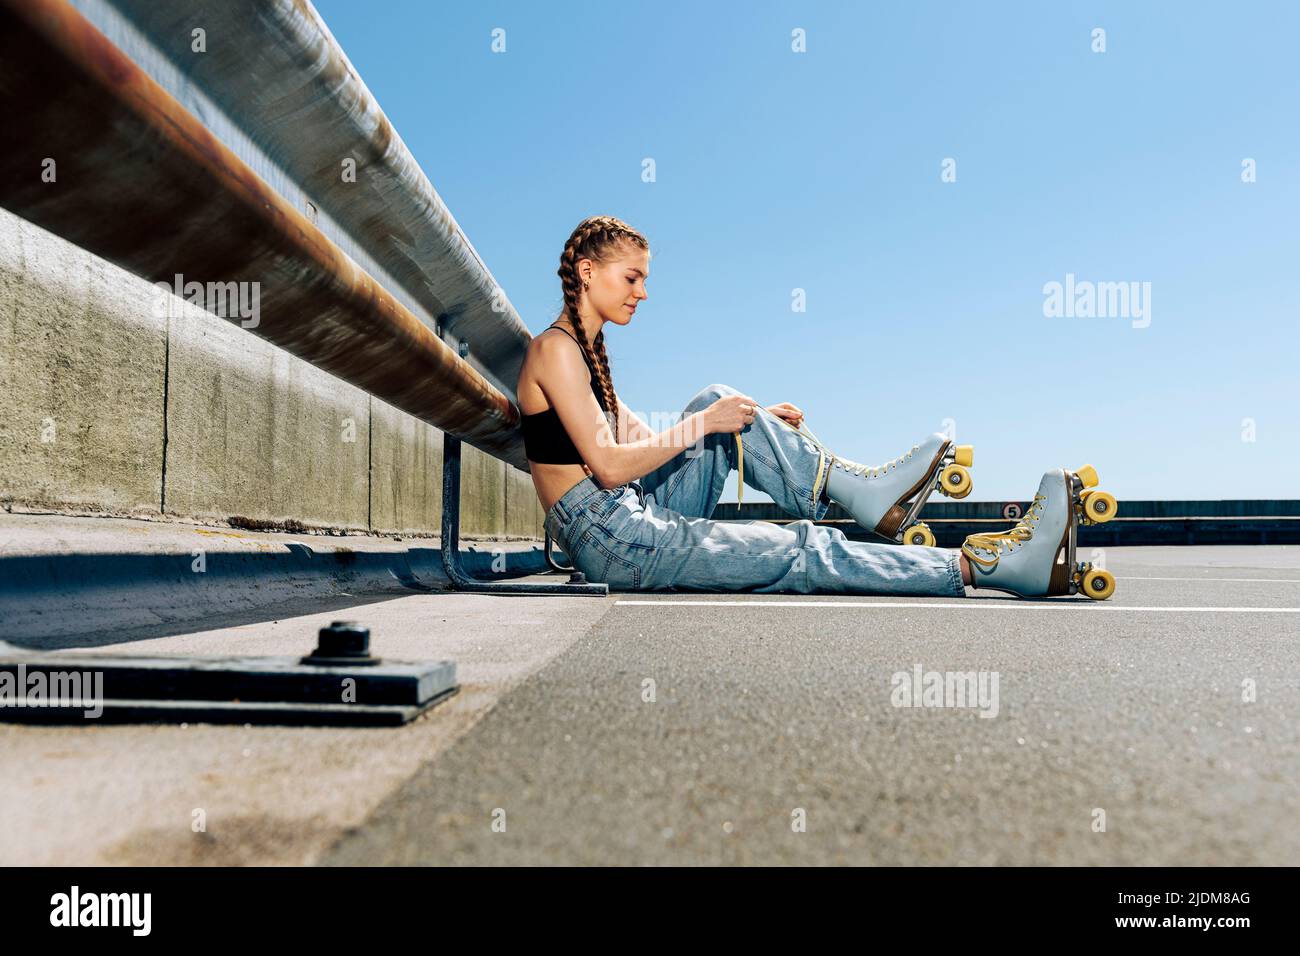 Chica atando sus patines de rodillos, fondo urbano Foto de stock